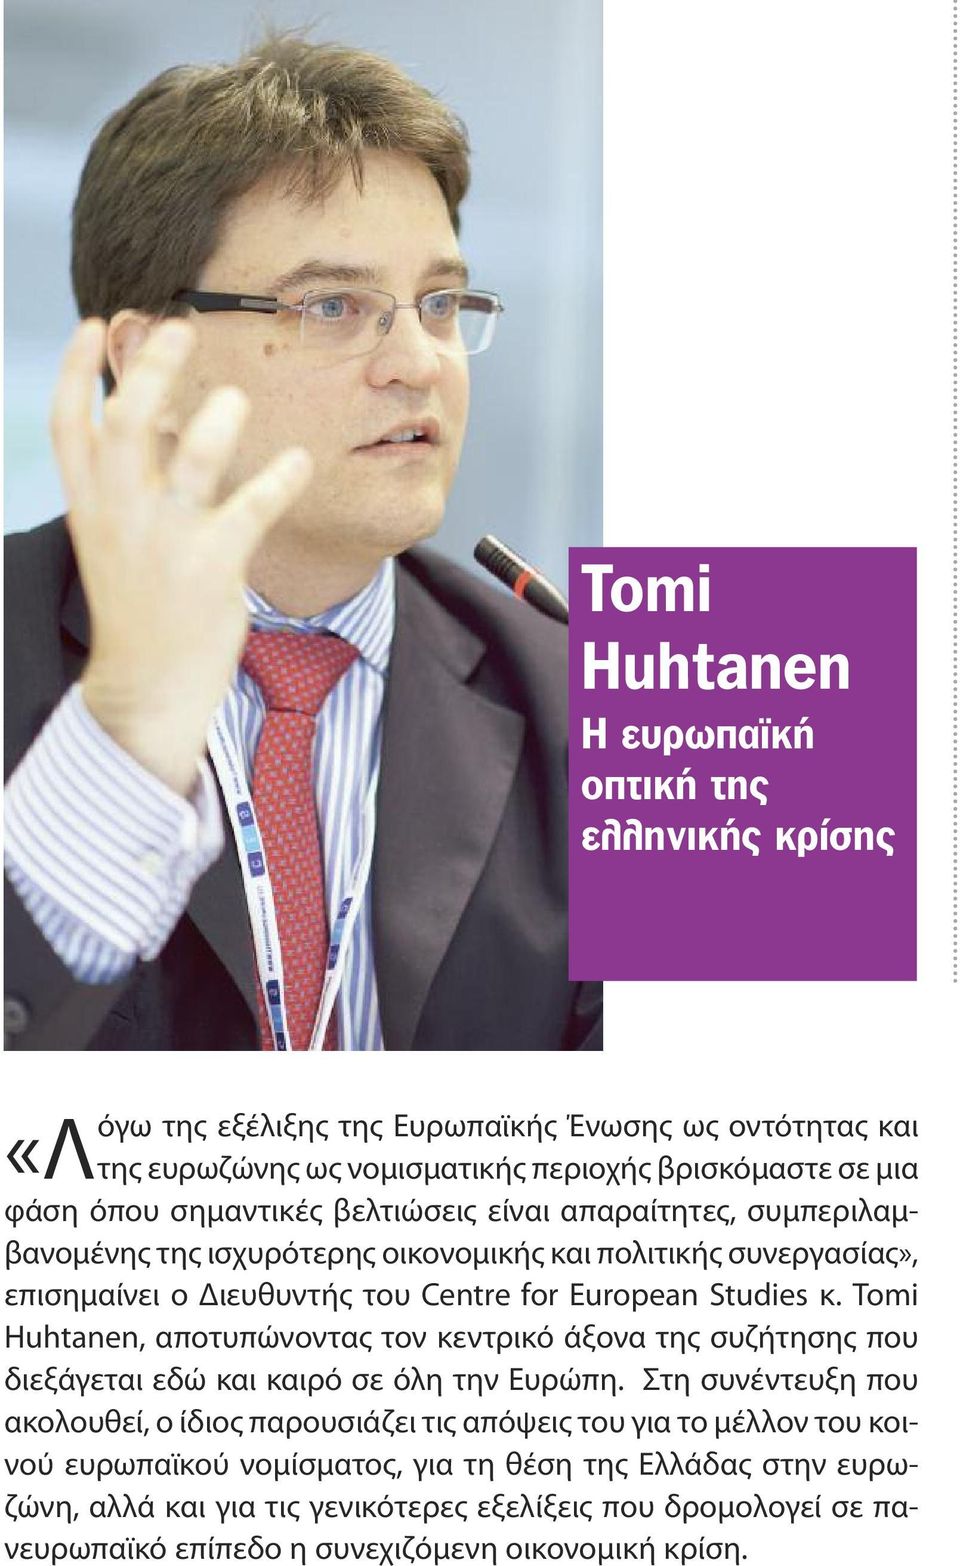 Tomi Huhtanen, αποτυπώνοντας τον κεντρικό άξονα της συζήτησης που διεξάγεται εδώ και καιρό σε όλη την Ευρώπη.